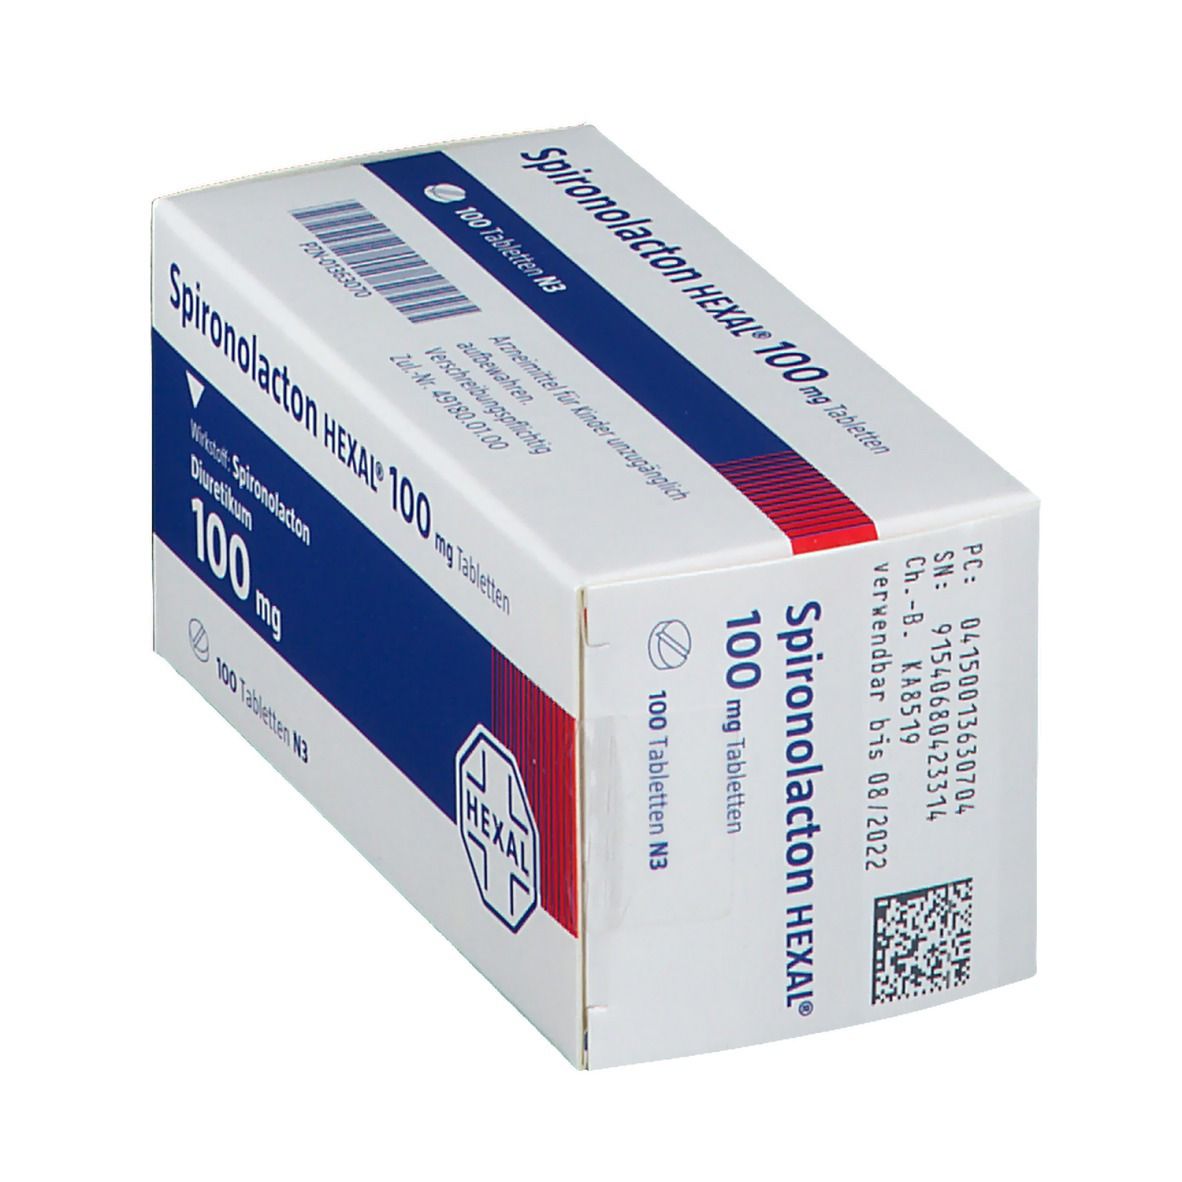 Spironolacton HEXAL® 100 mg